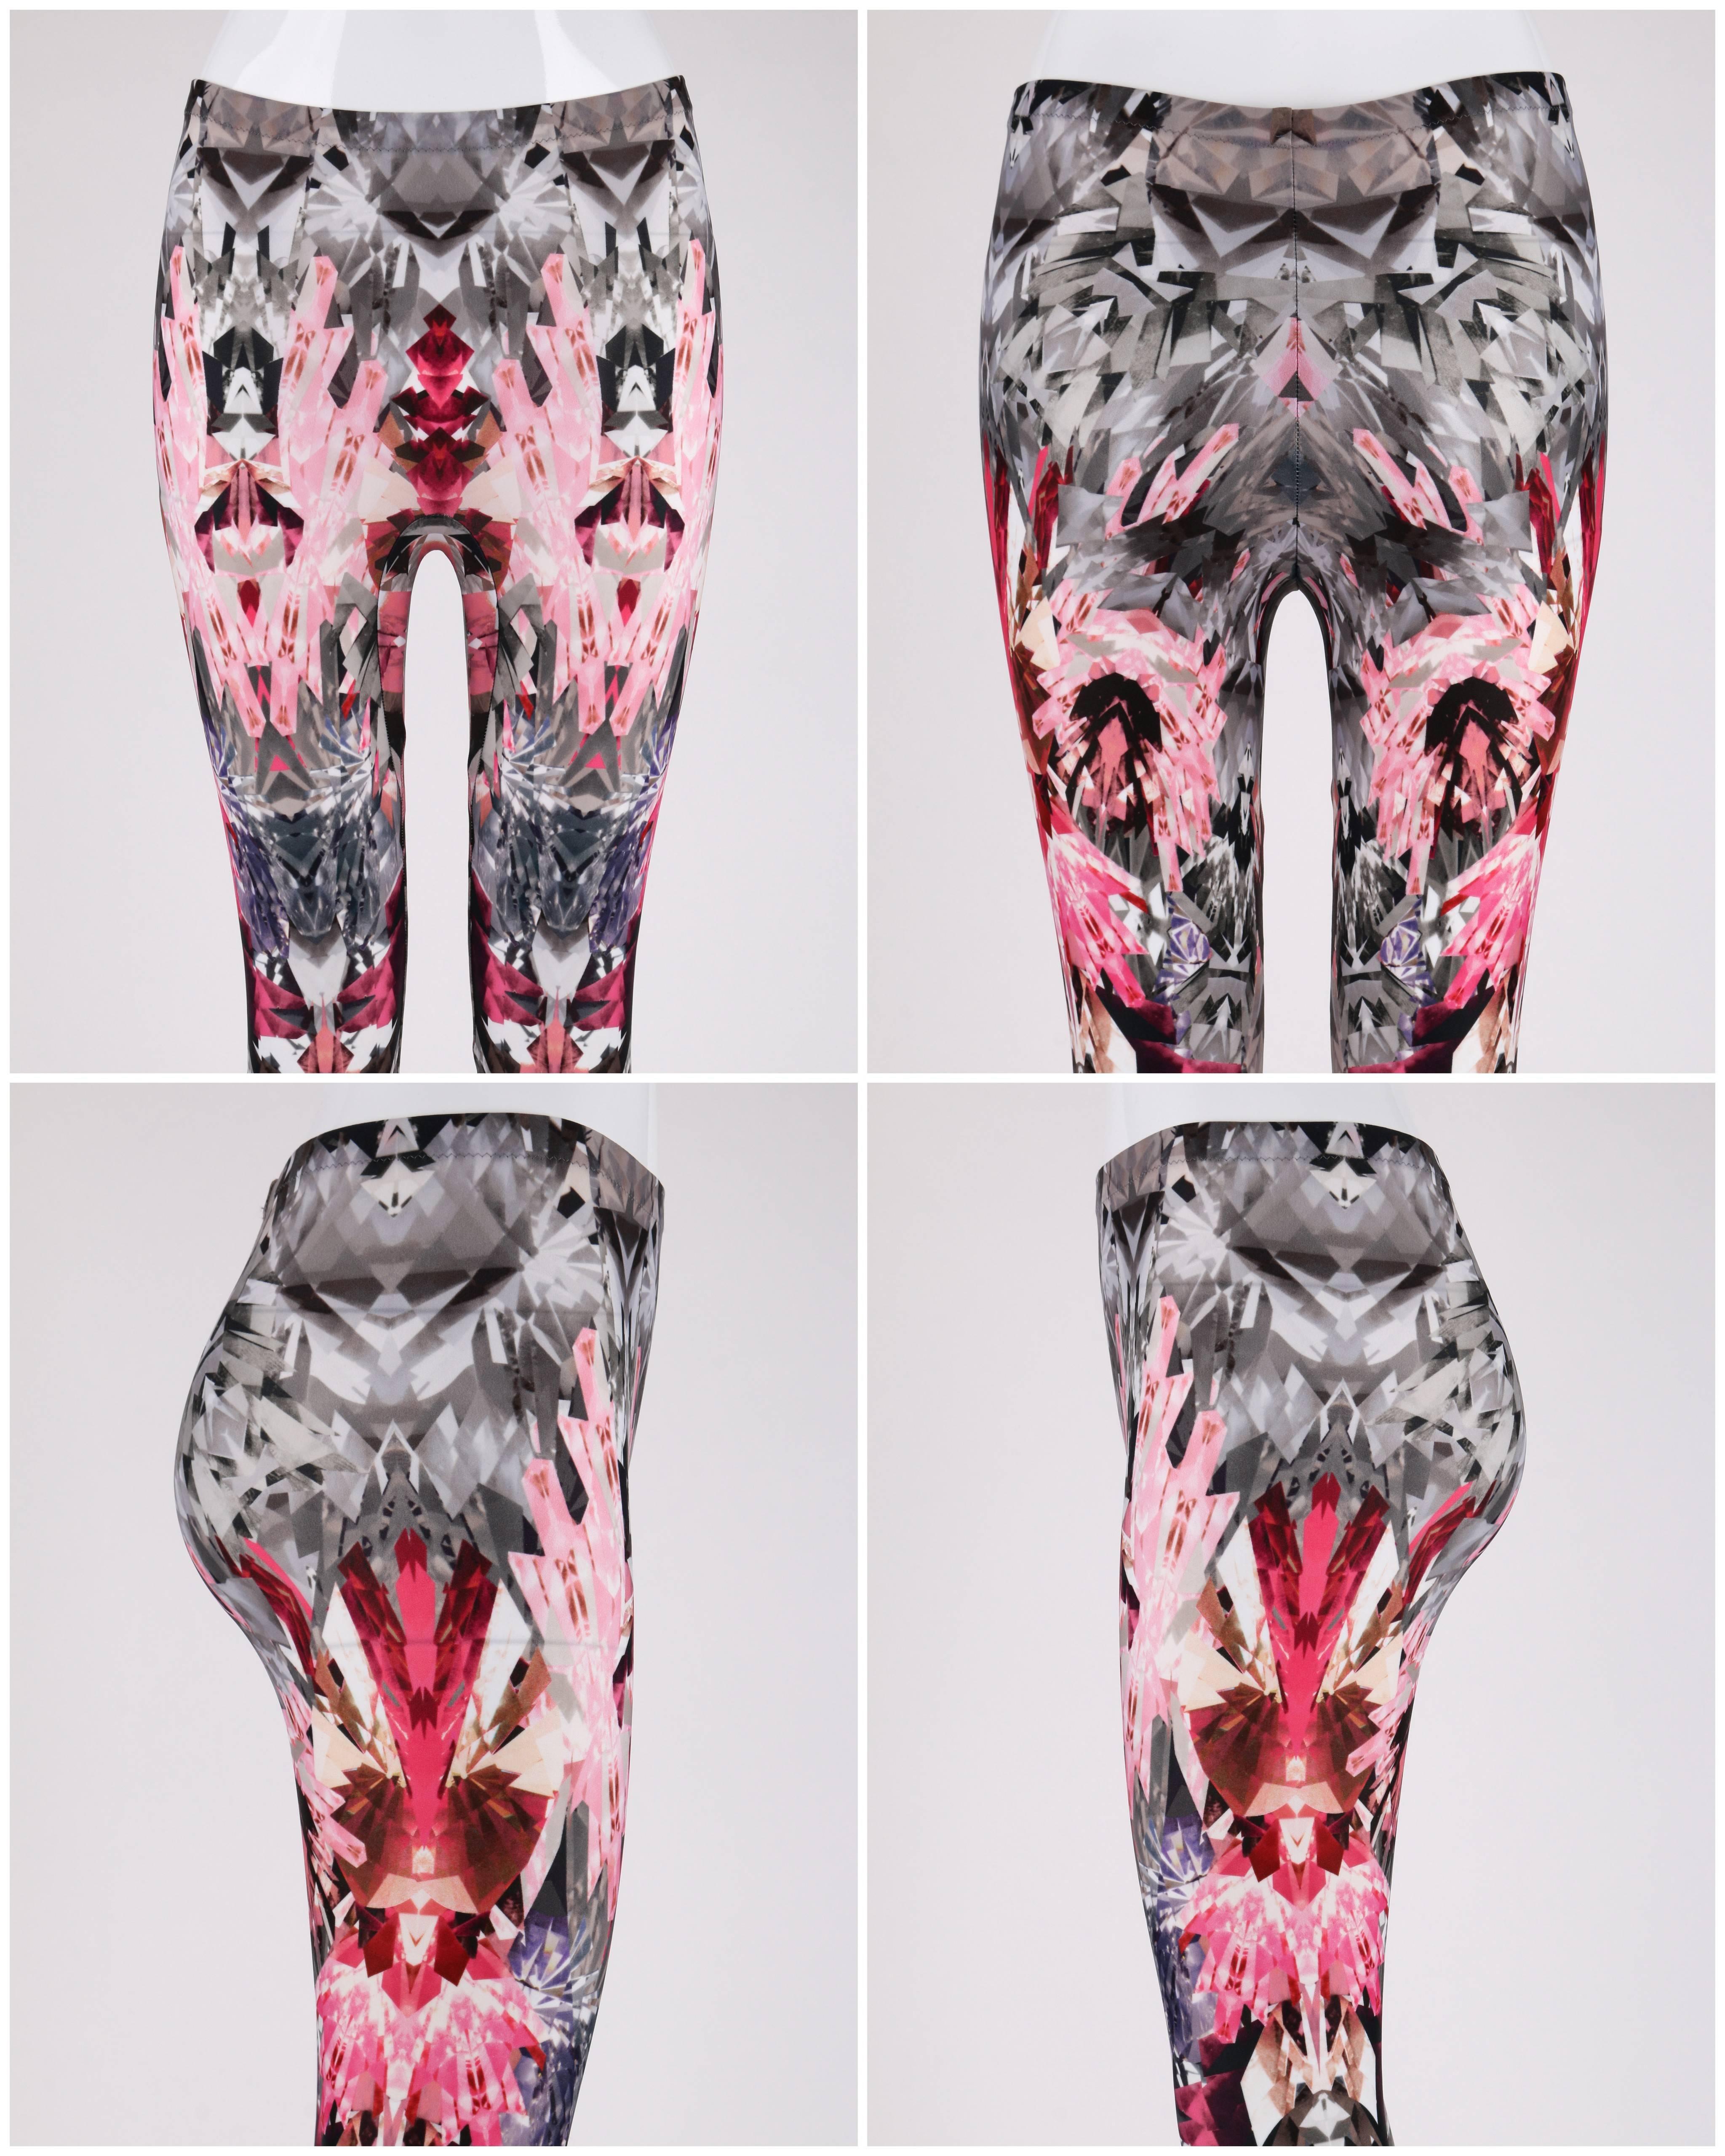 ALEXANDER MCQUEEN S/S 2009 Pink Crystal Kaleidoscope Print Leggings Pants Sz XS 1